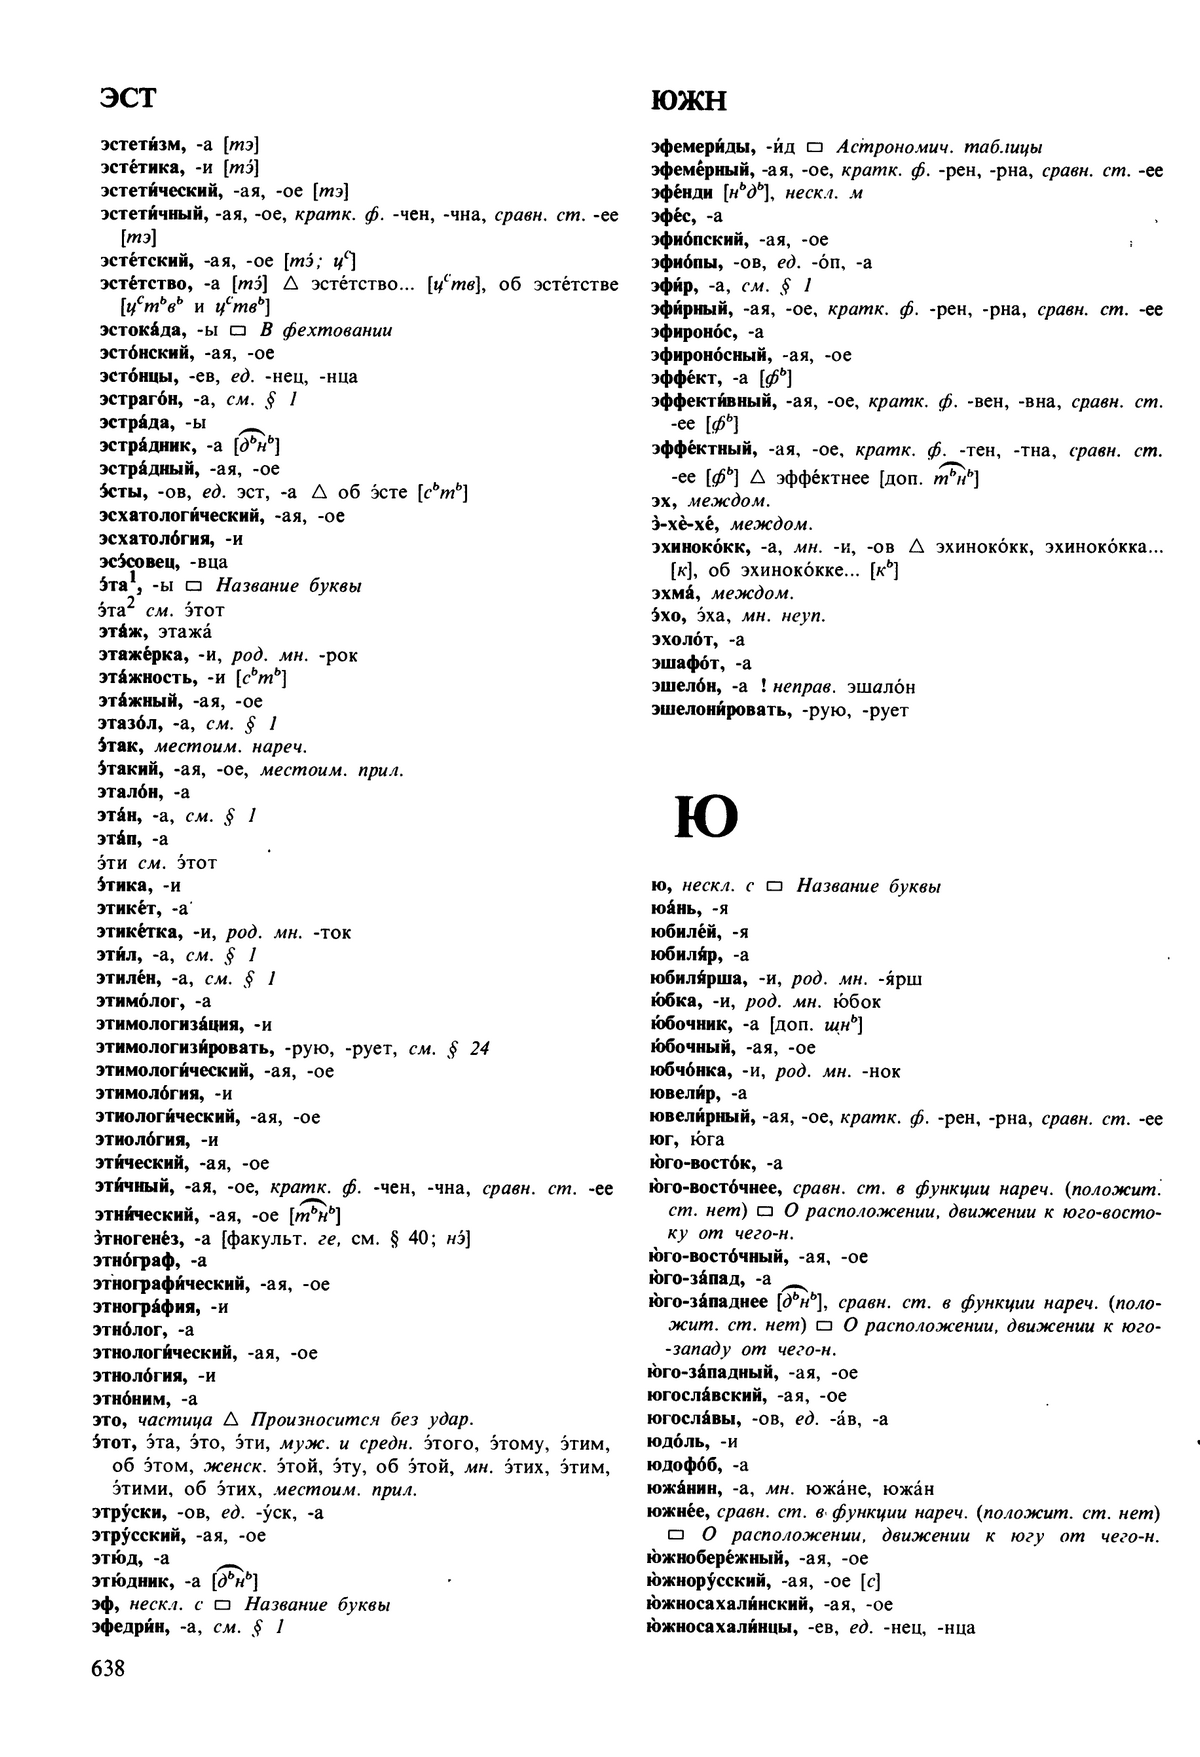 Фотокопия pdf / скан страницы 638 орфоэпического словаря под редакцией Аванесова (5 издание, 1989 год)